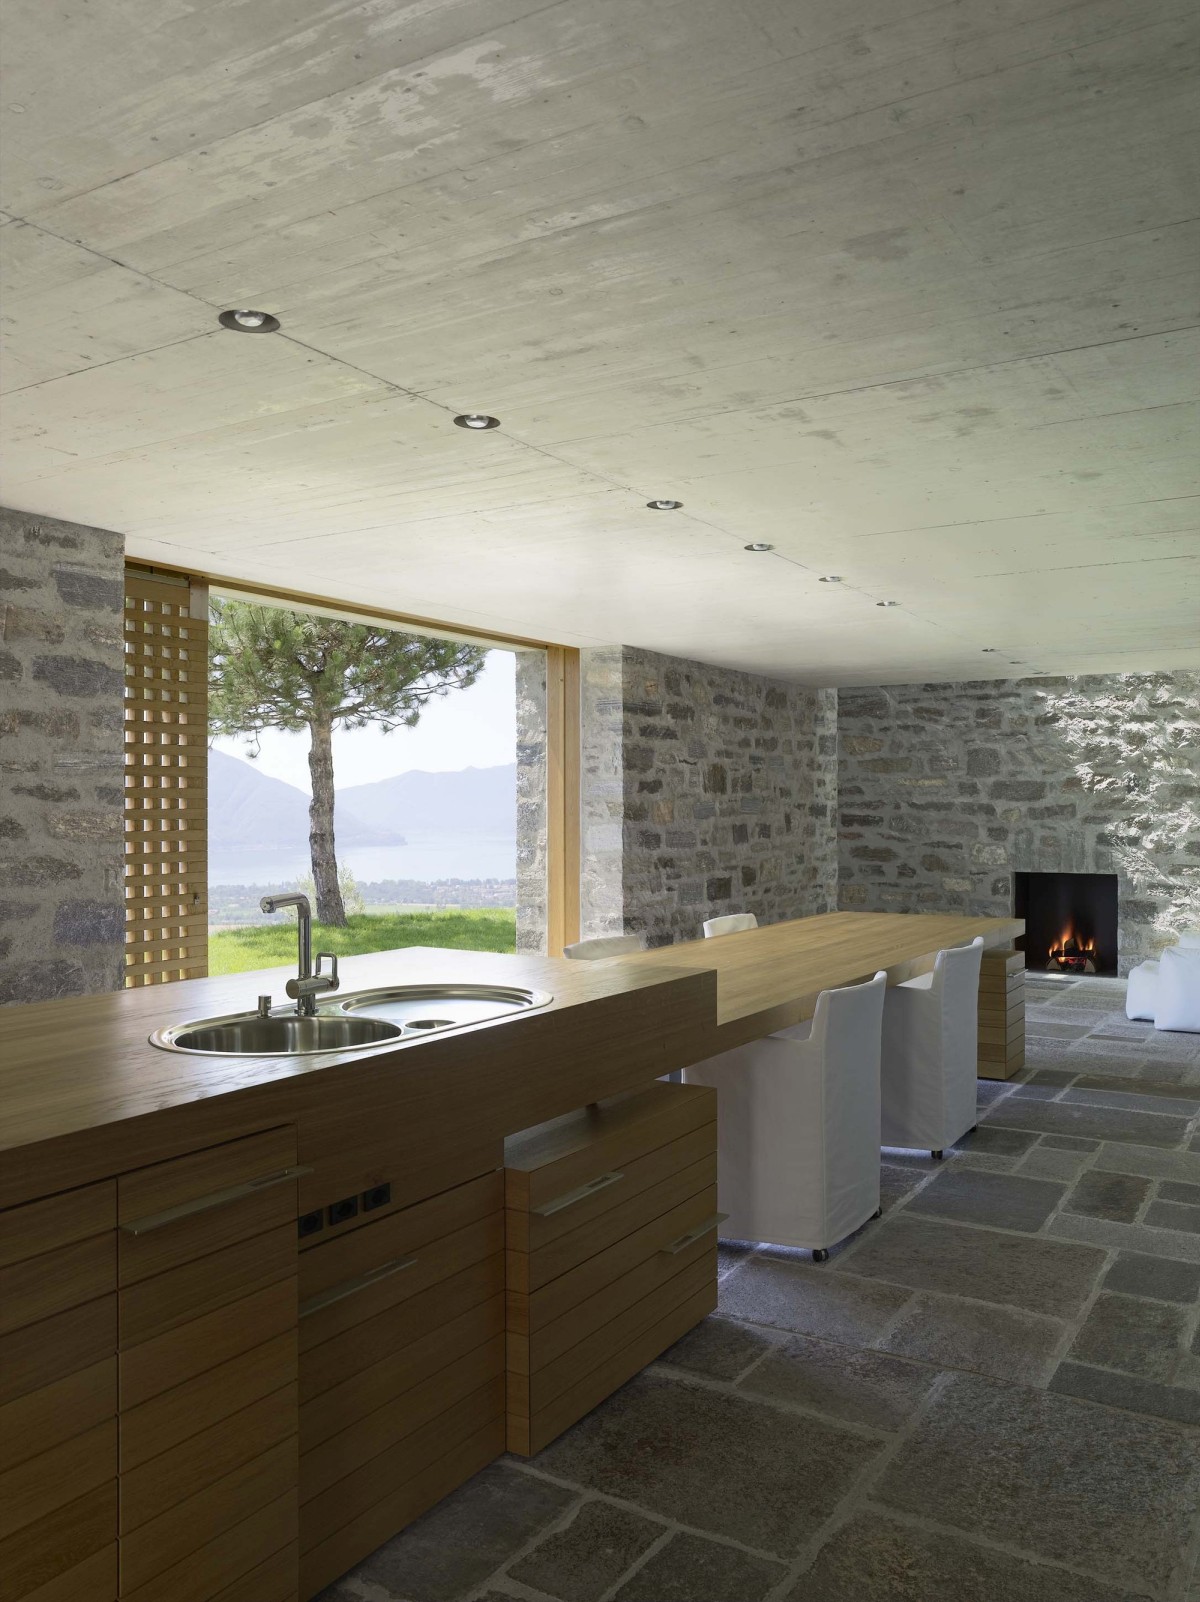 Limestone Kitchen Floor